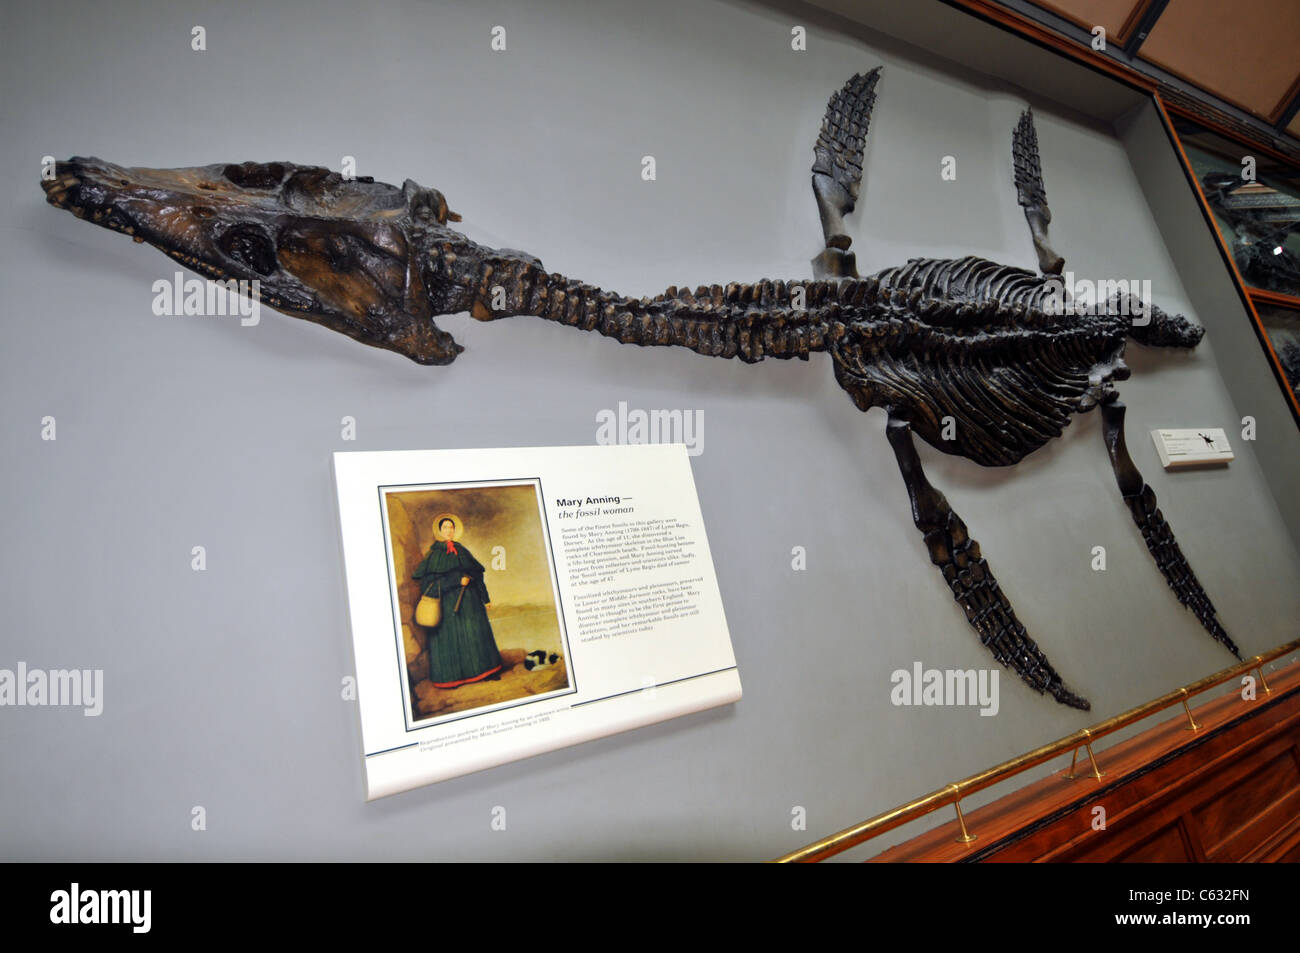 Pliosaur combustibles au Natural History Museum, Kensington, Londres, Angleterre, Royaume-Uni Banque D'Images